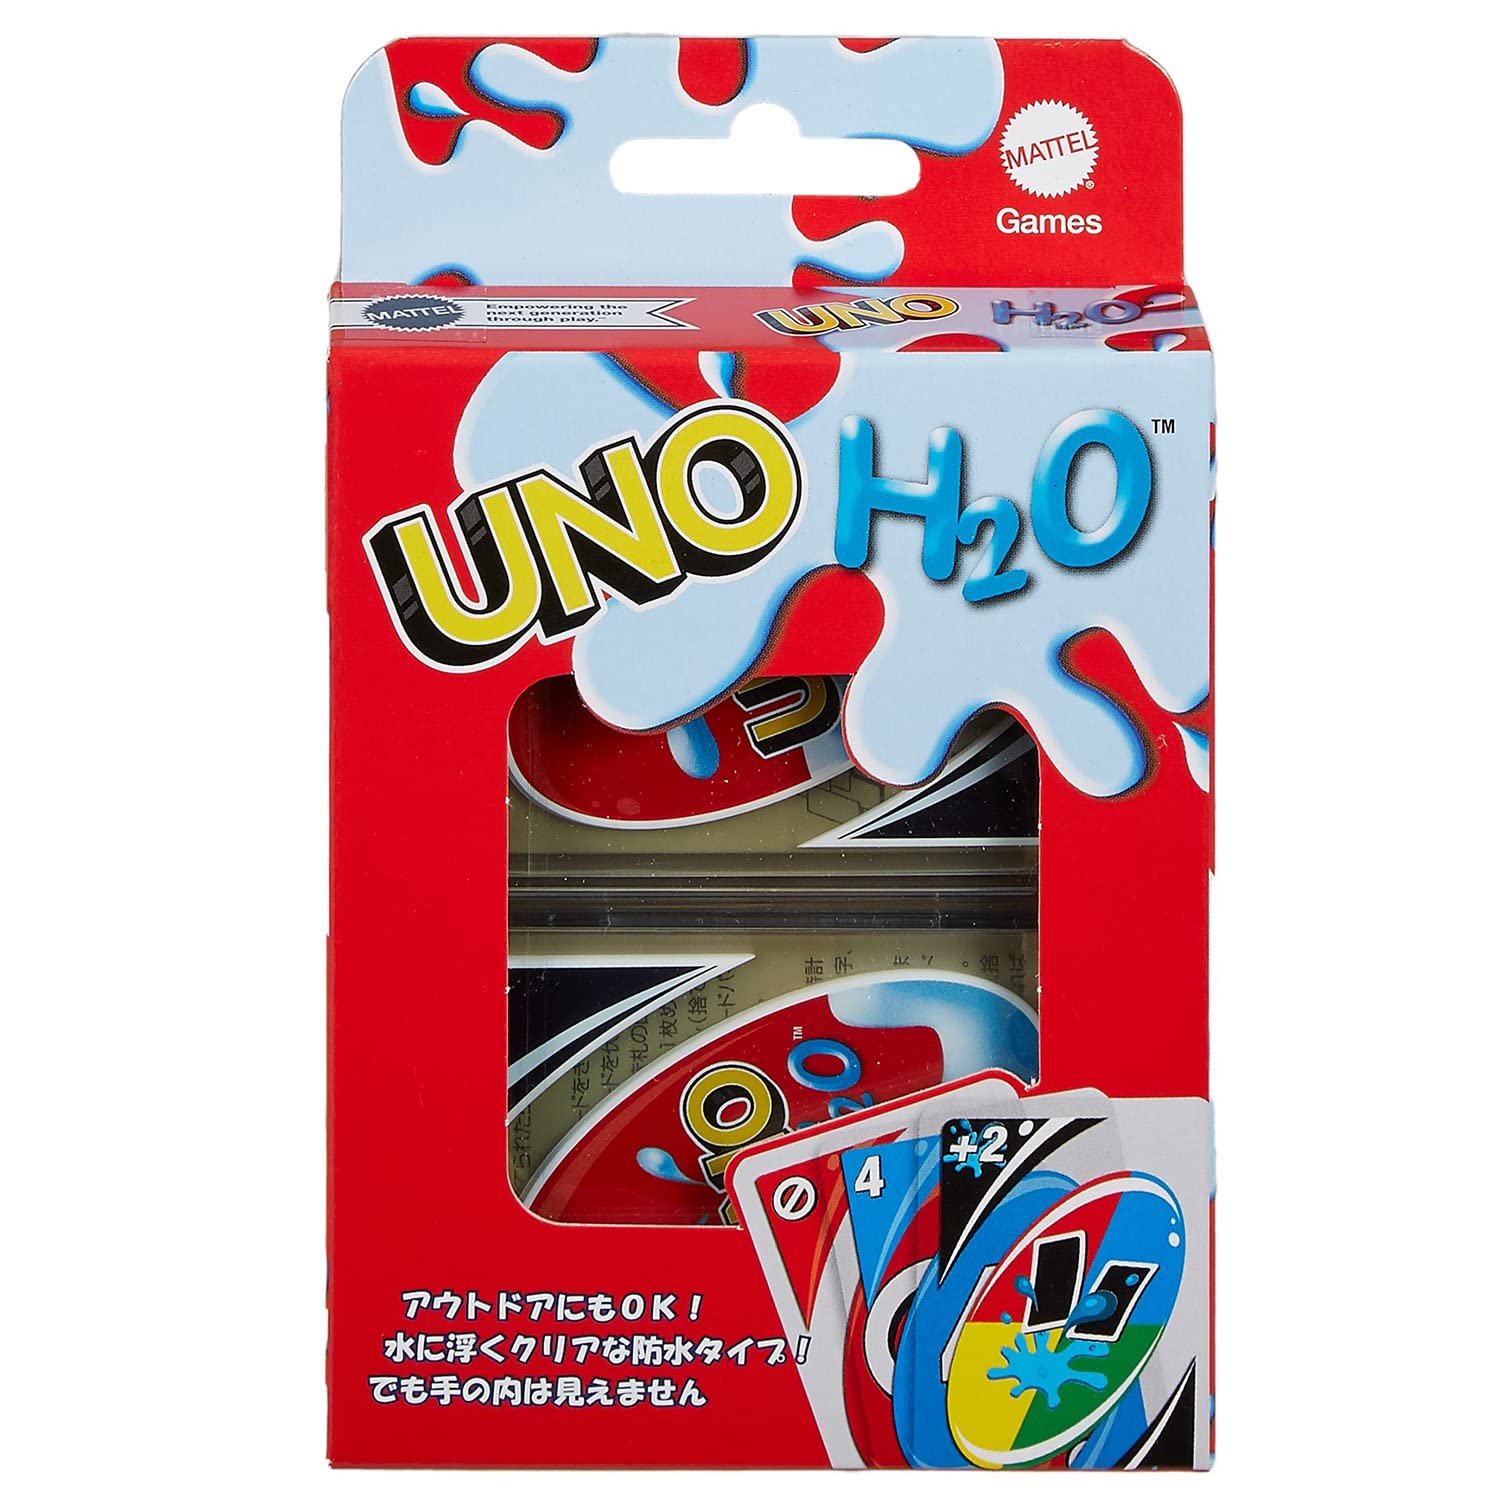 マテルゲーム(Mattel Game) ウノ(UNO) H2O 2-10人用 7才以上 HMM00画像